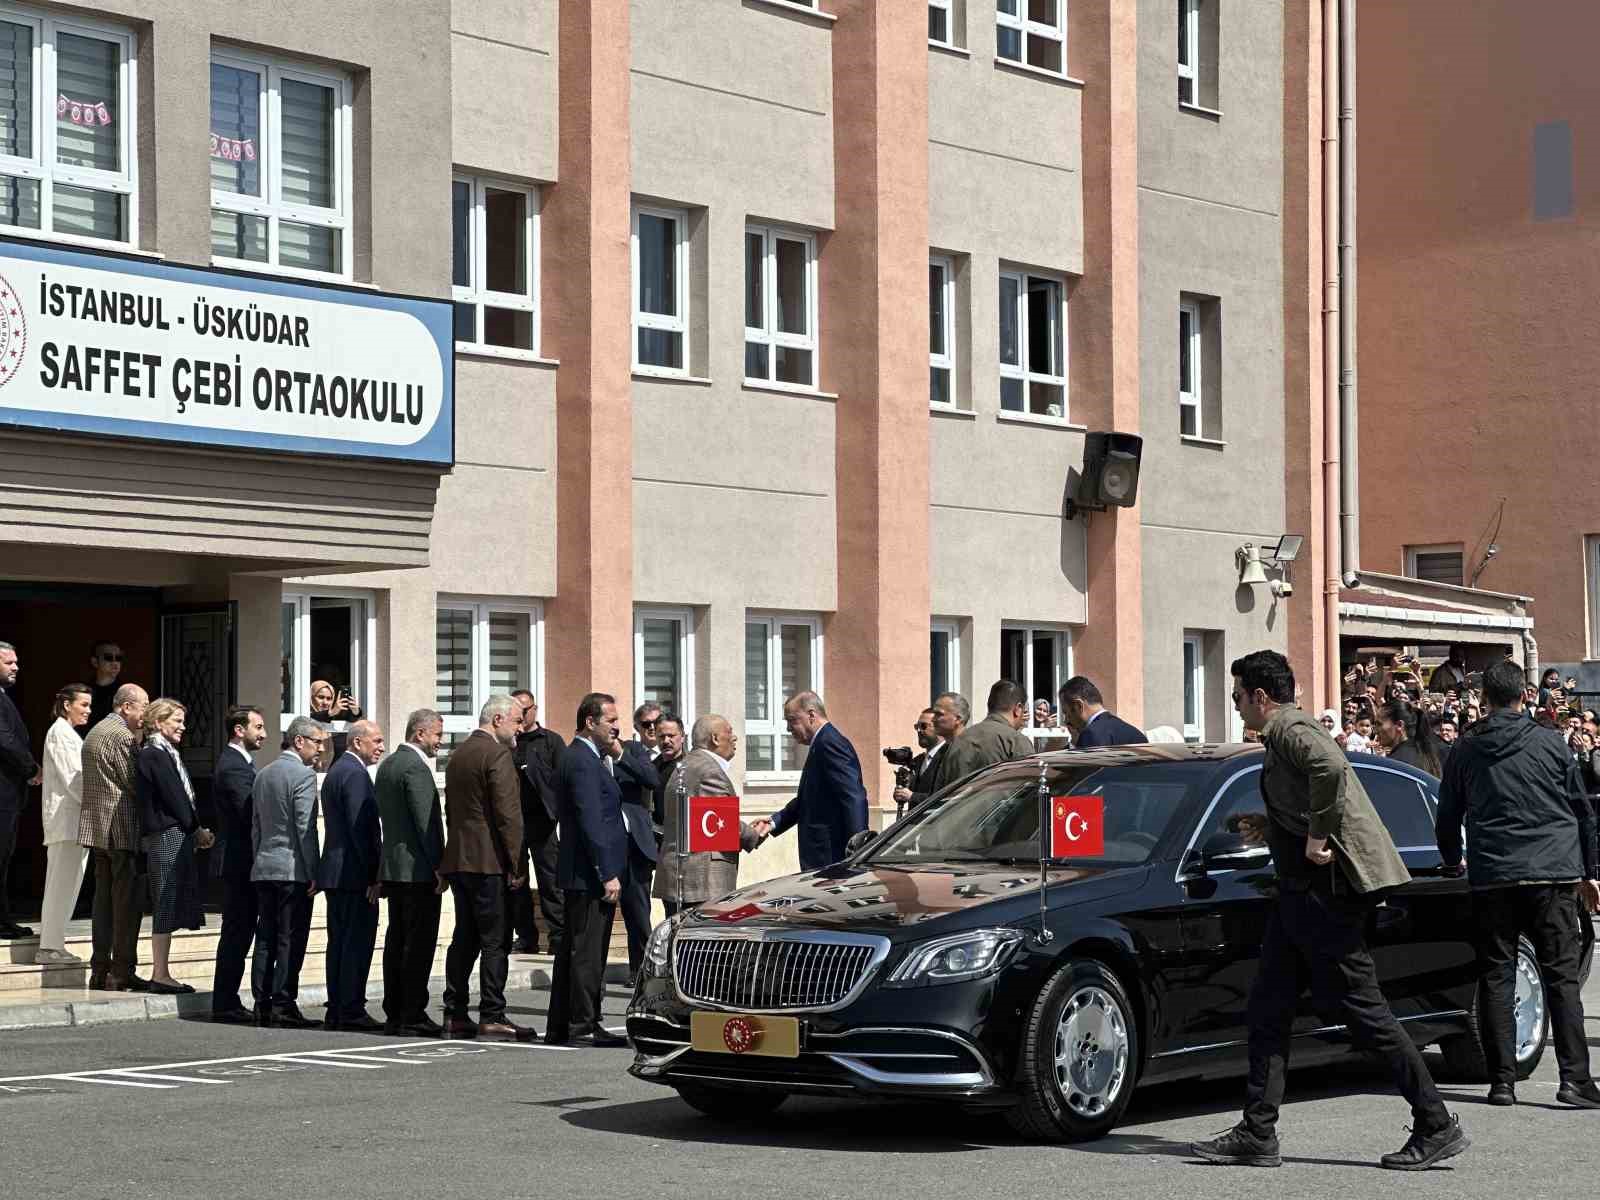 Cumhurbaşkanı Recep Tayyip Erdoğan, 31 Mart Mahalli İdareler Genel Seçimleri için oyunu kullanmak üzere Üsküdar’daki Saffet Çebi Ortaokulu’na geldi.